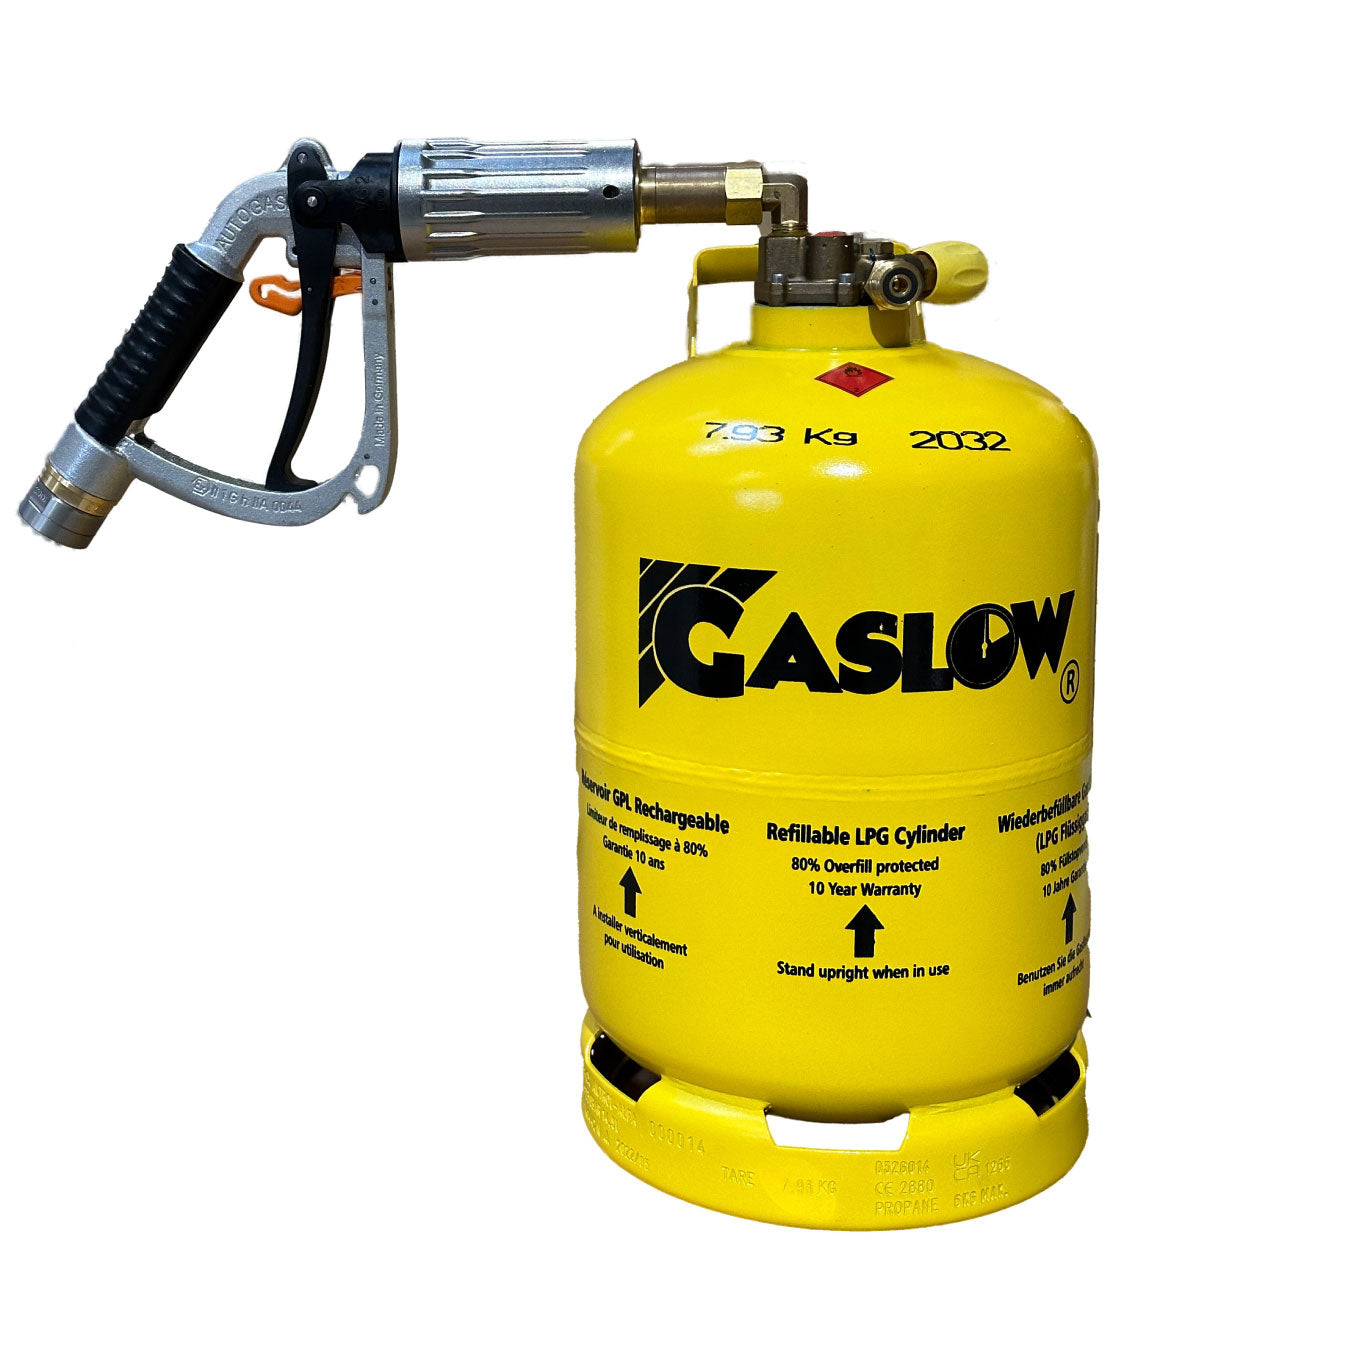 Gaslow 11Kg nachfüllbare LPG-Flasche